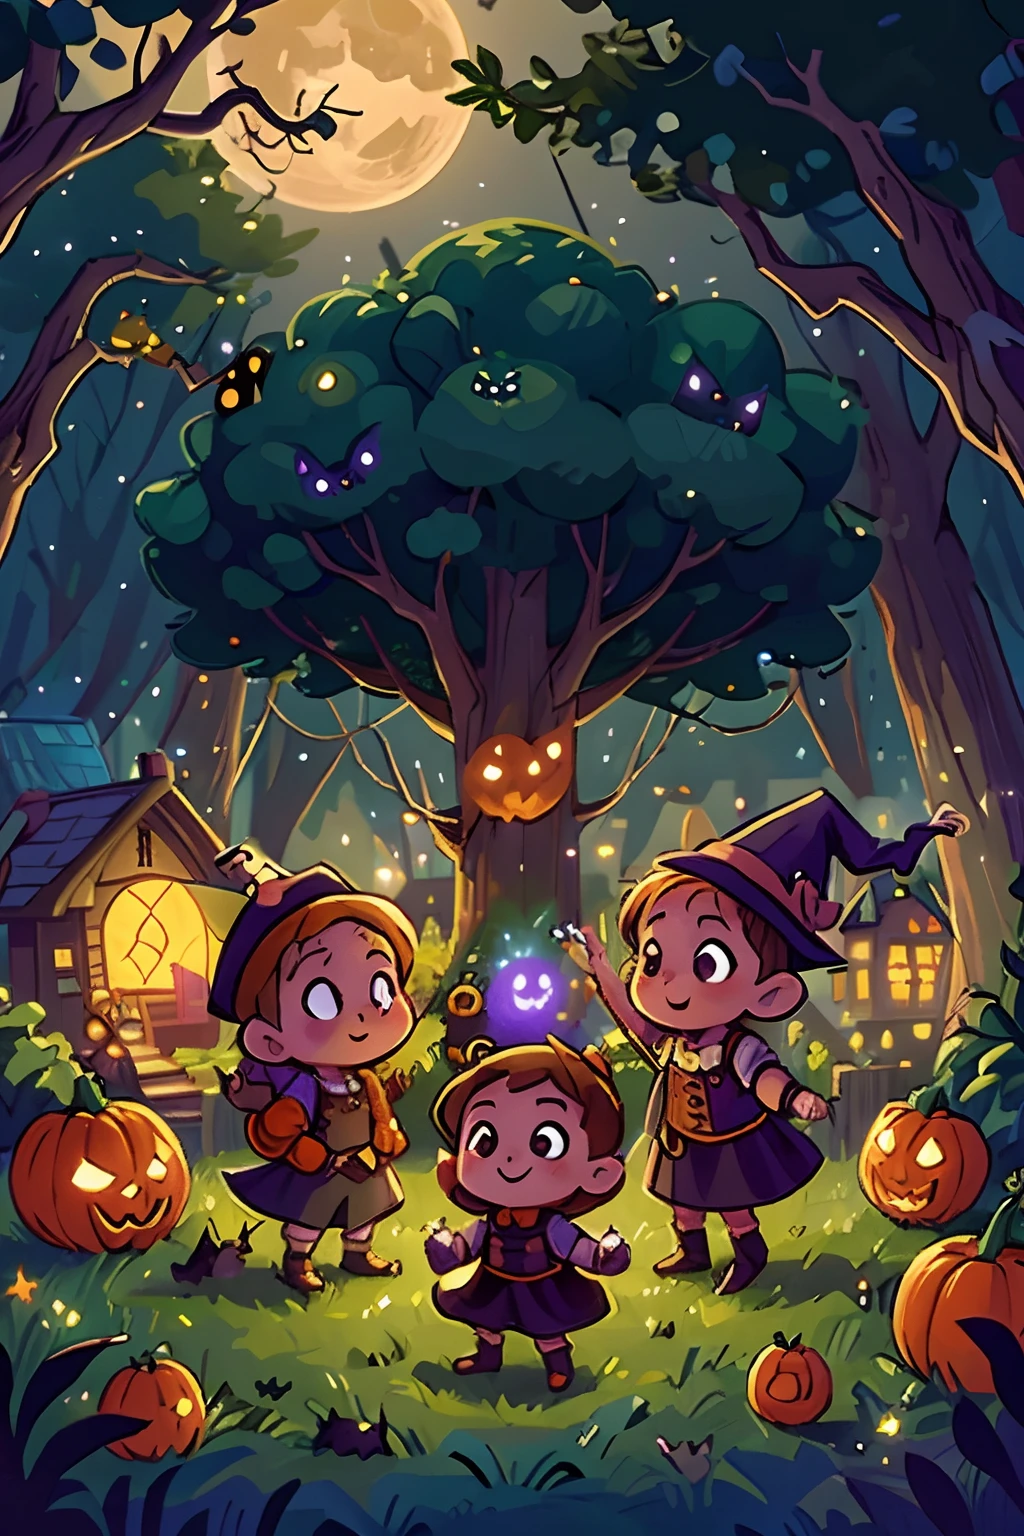 dessinez un groupe de jeunes sorcières très mignonnes et de gnomes mignons dansant autour de citrouilles d’Halloween. nuit étoilée, immense pleine lune, Personnages heureux. Lumières d’un petit village la nuit, chauves-souris, hiboux et arbres